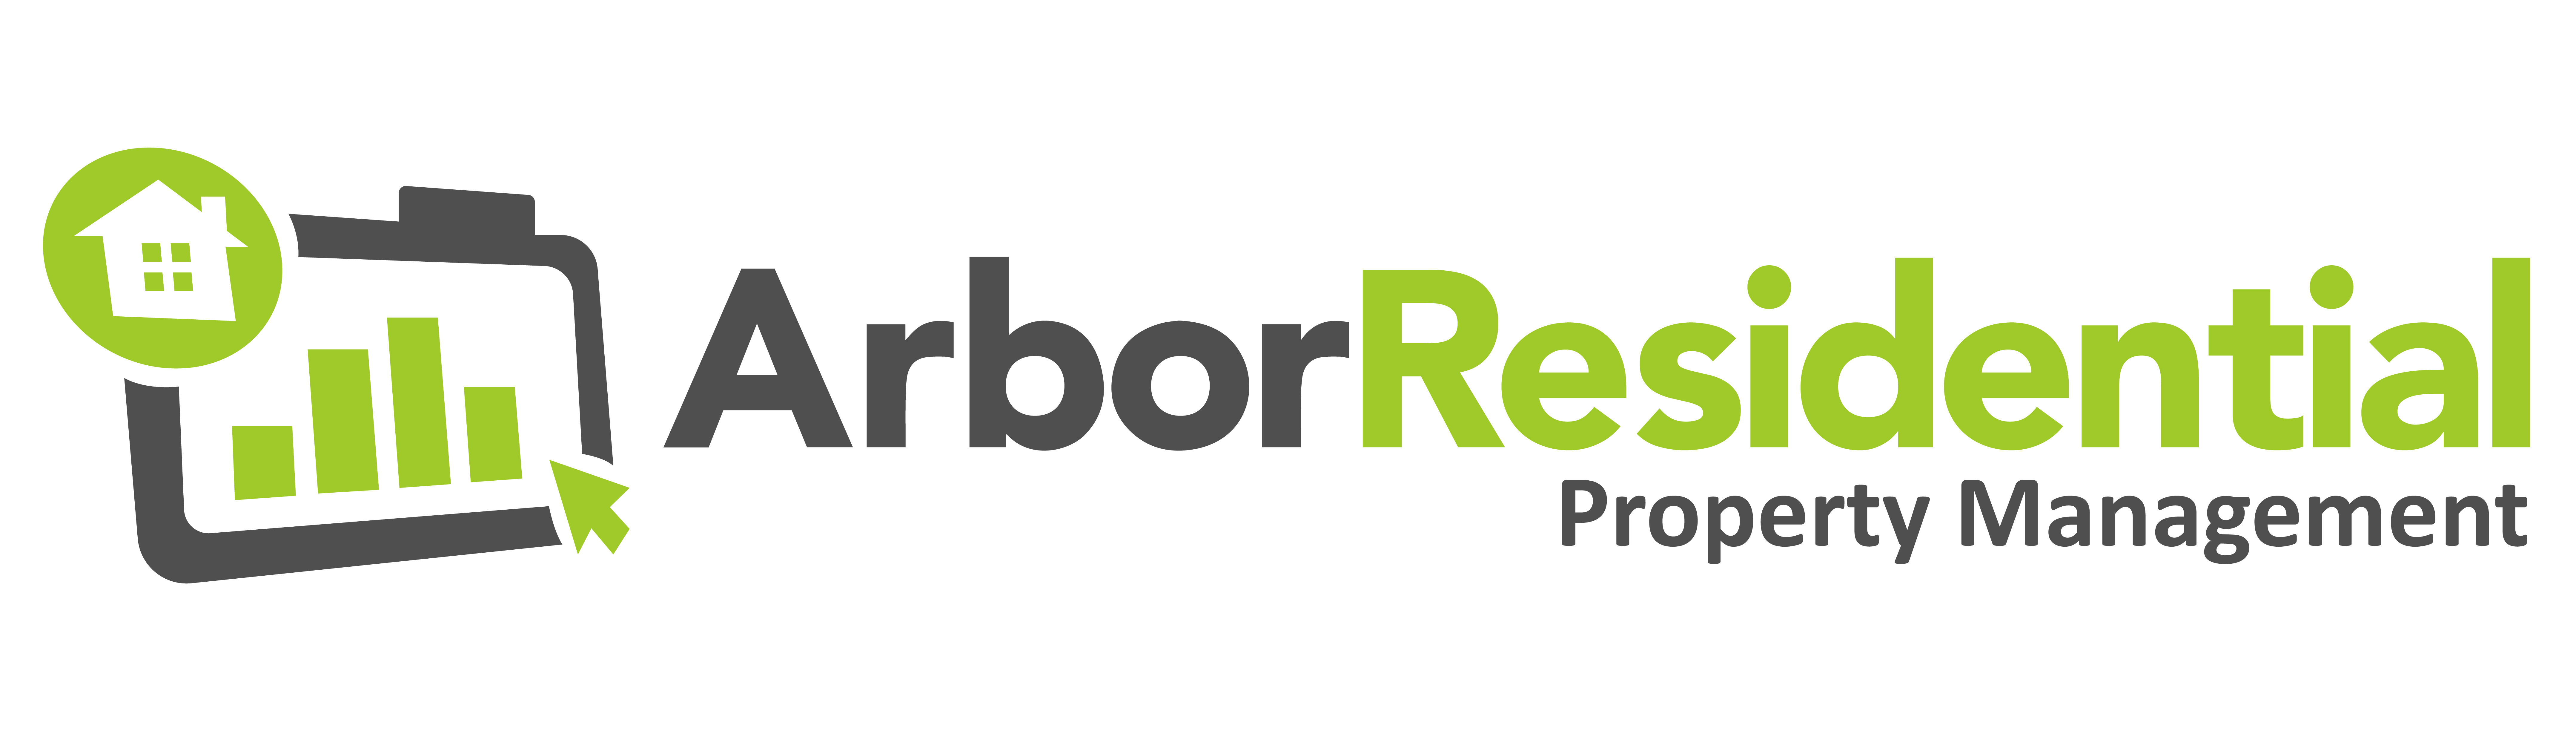 Arbor Residential logo